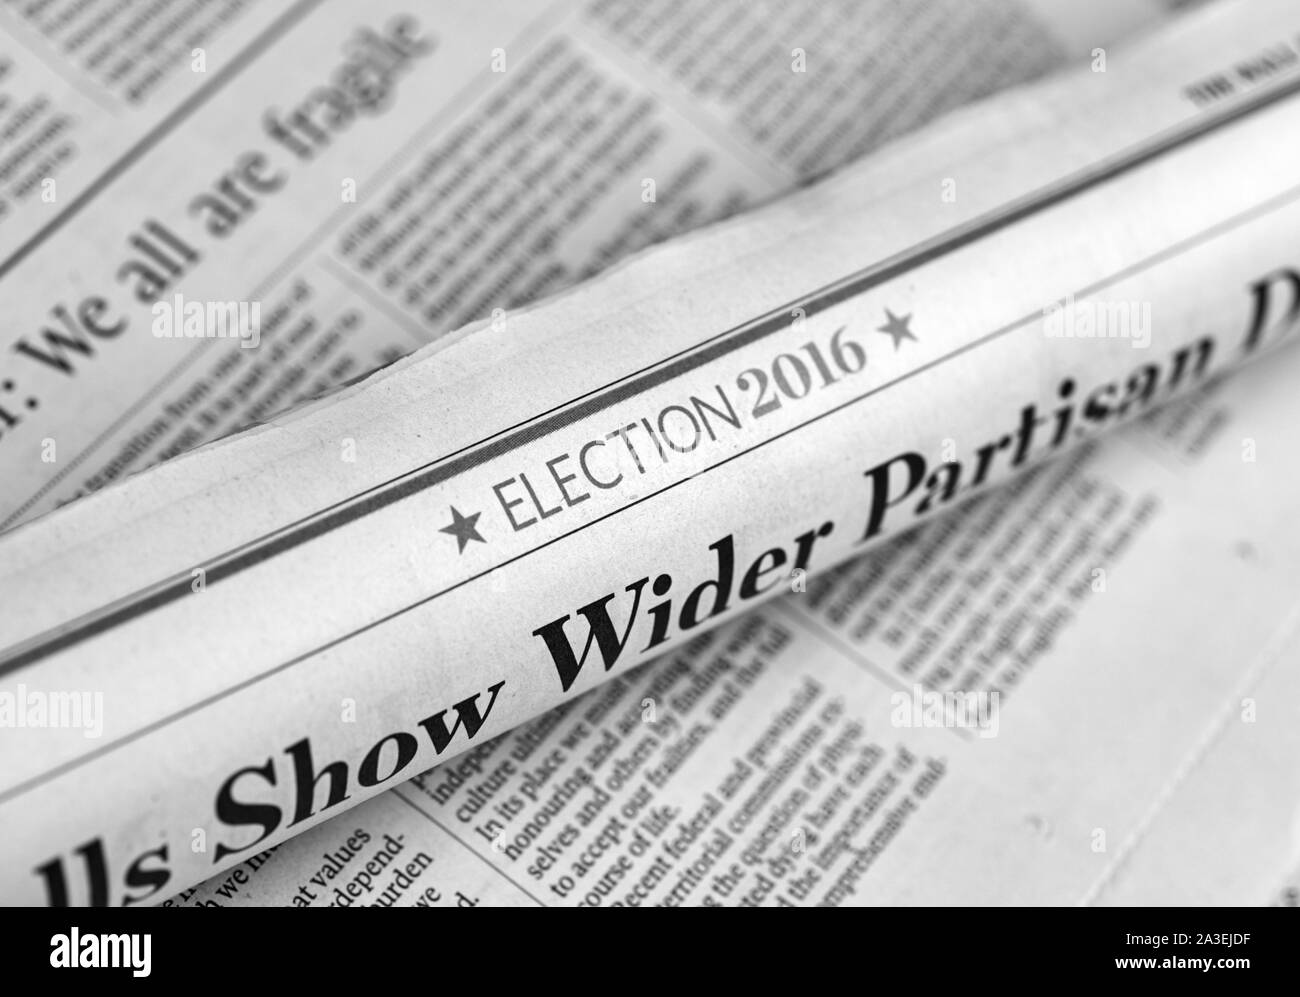 MONTREAL, KANADA - 3. MÄRZ 2016 - Zeitung mit Wahl 2016 Artikel gerollt. Die Vereinigten Staaten Präsidentschaftswahl von 2016, anberaumt für Dienstag Stockfoto